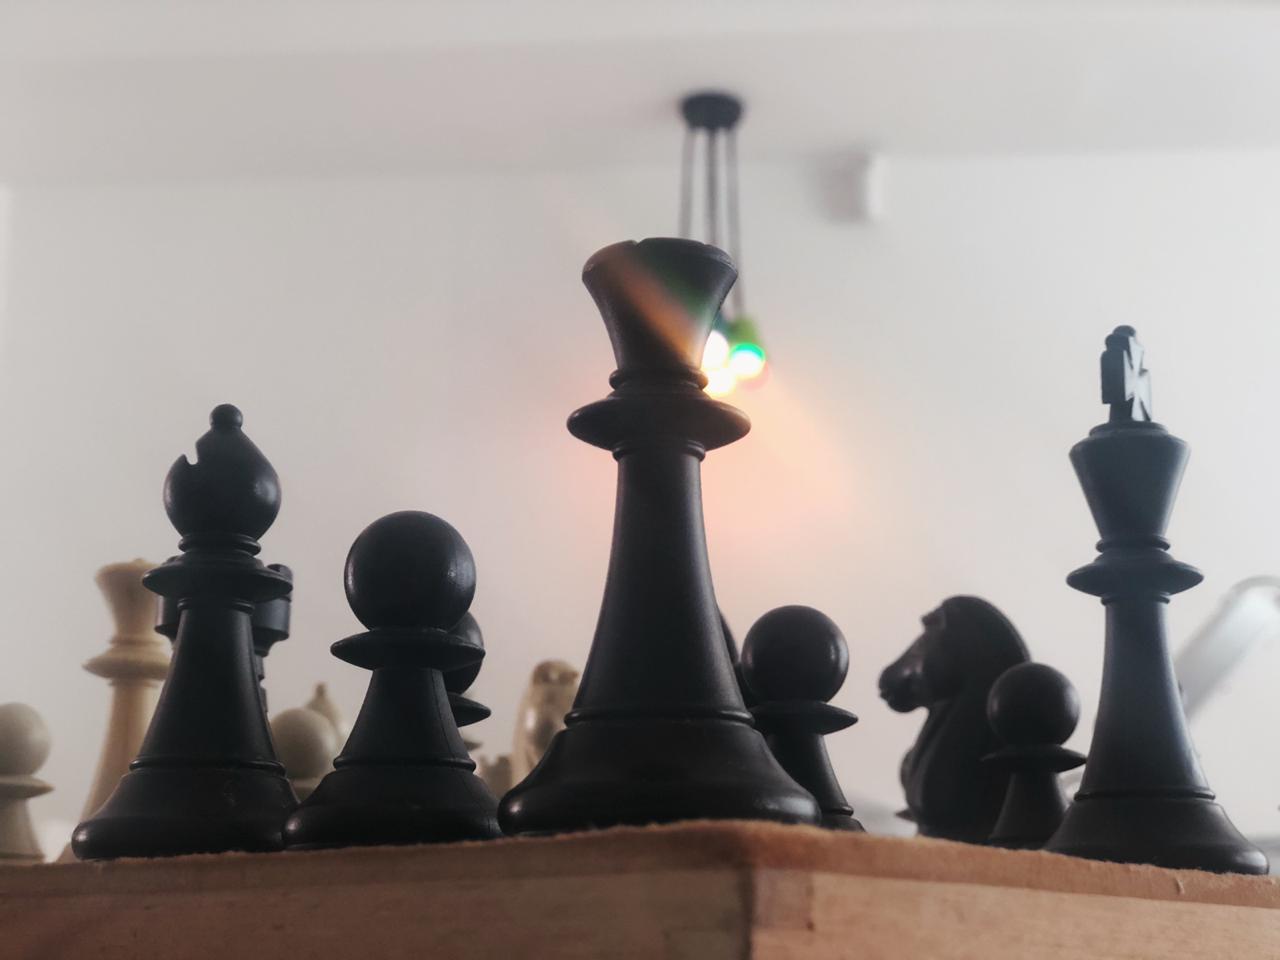 Introdução ao Xadrez, Importância do Jogo de Xadrez, Contexto Histórico,  Regras e Posicionamento das peças., By Xadrez